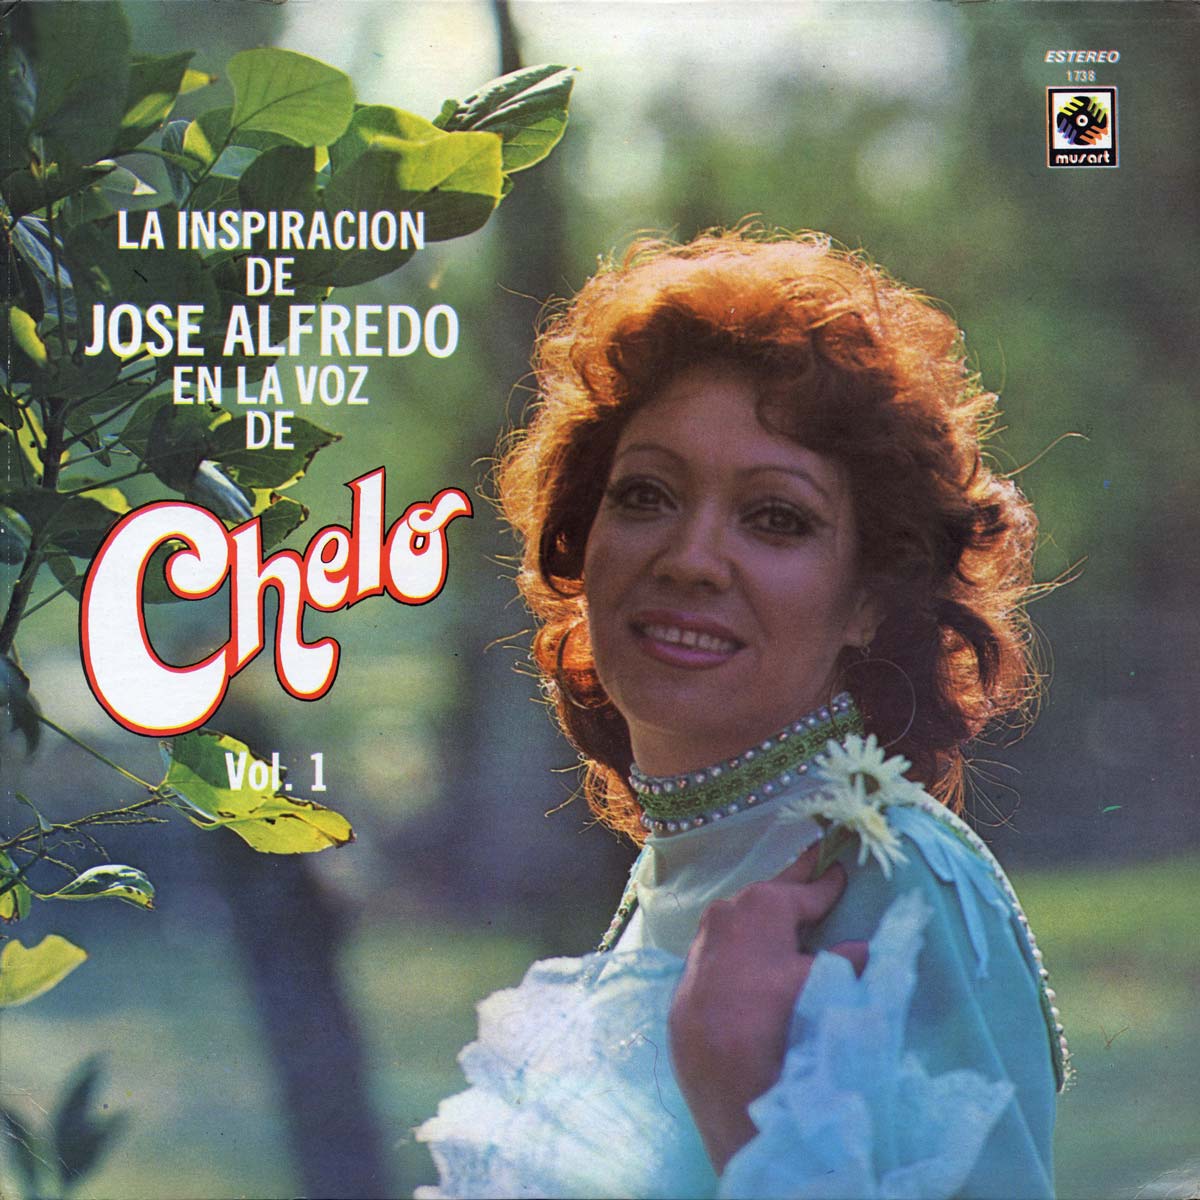 Featured Image for “La Inspiración De José Alfredo Jiménez En La Voz De”